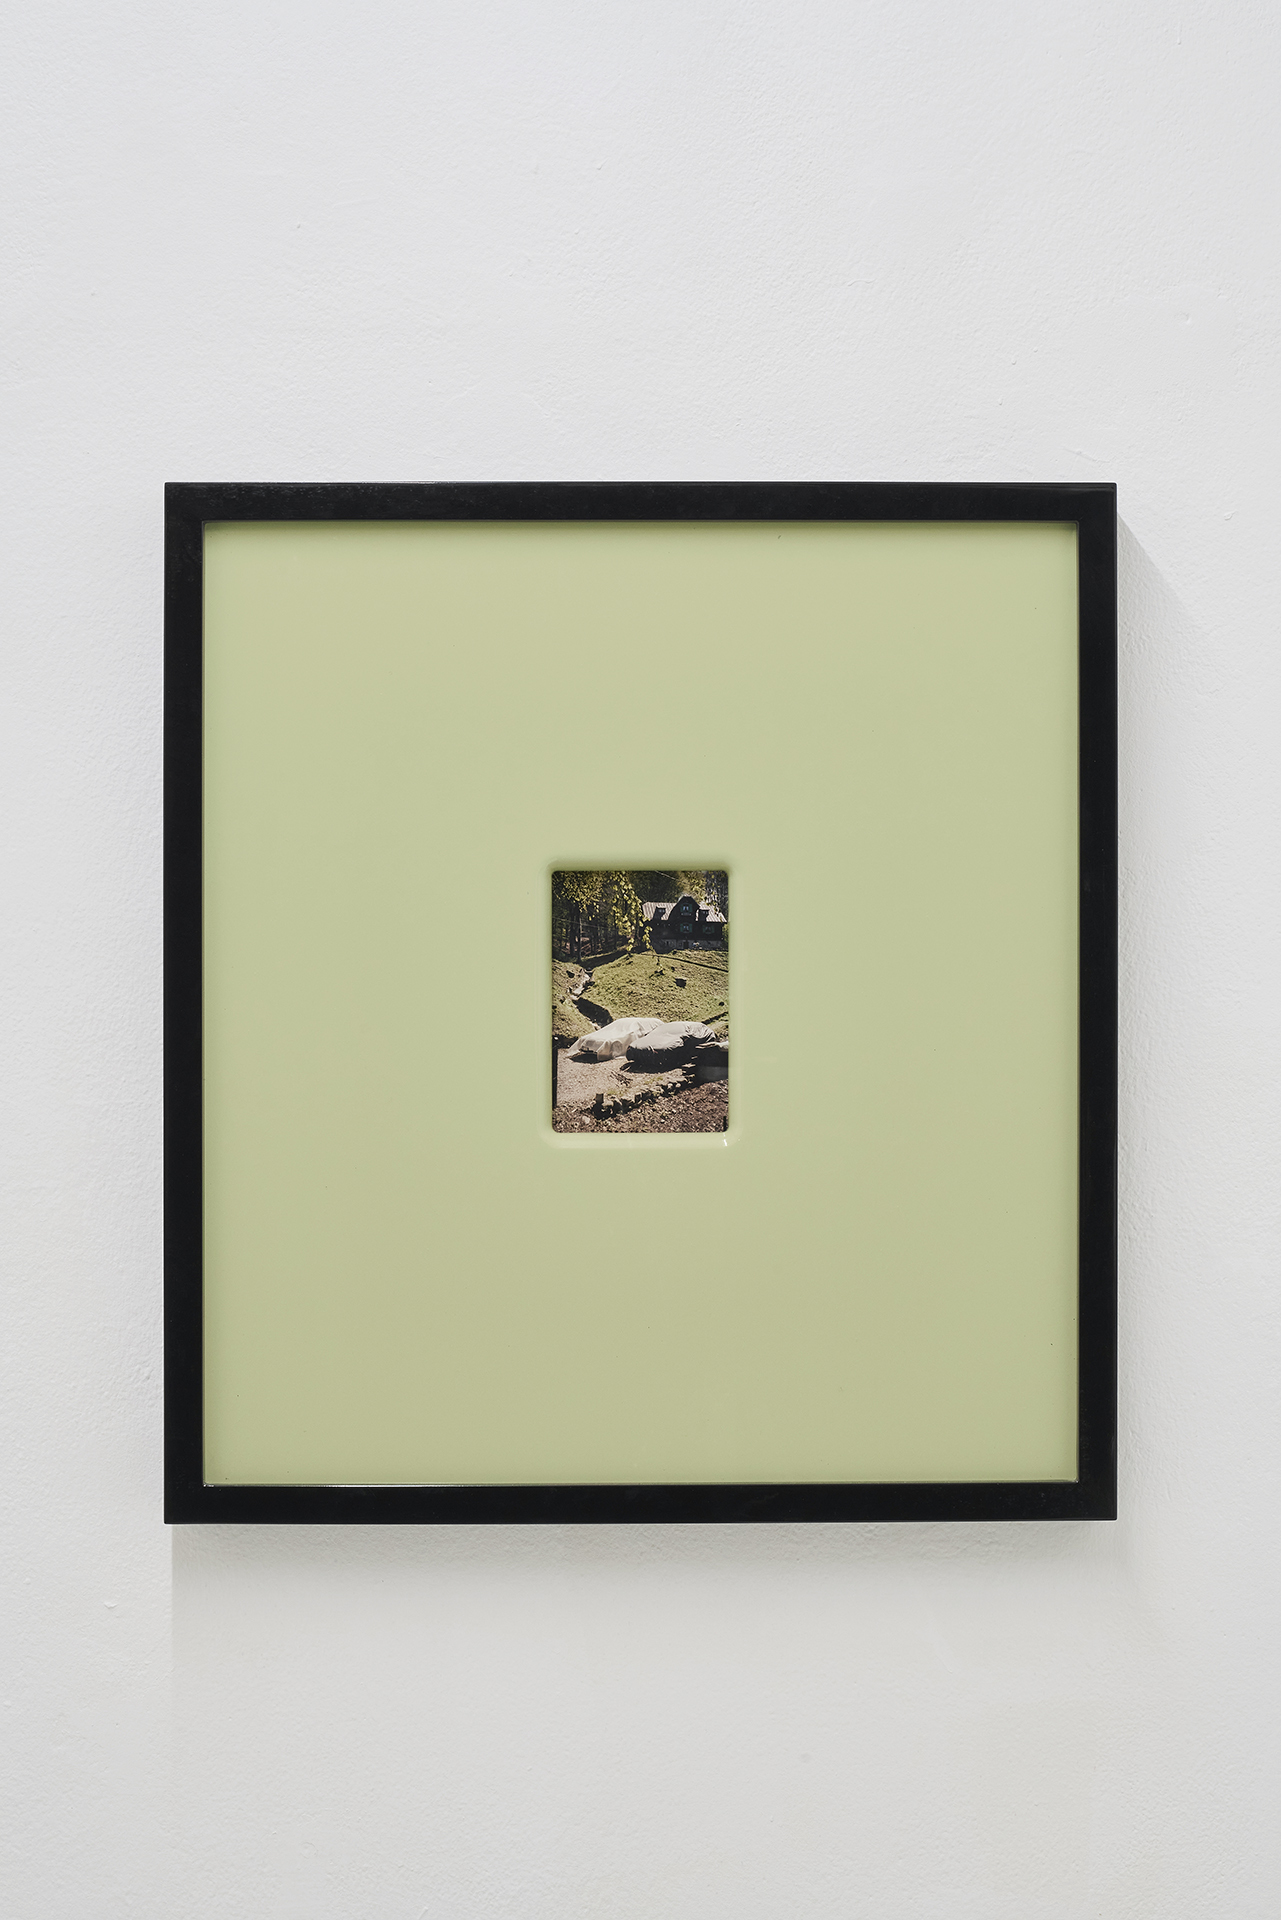 Andrea Magnani, Letizia Distante, Quattro automobili non inquadrate, 1993, 2024. Chromogenic print, artist frame. 11,4 x 17 cm (photo), 66,5 x 61 x 5,5 cm (frame). Photo: Andrea Piffari.